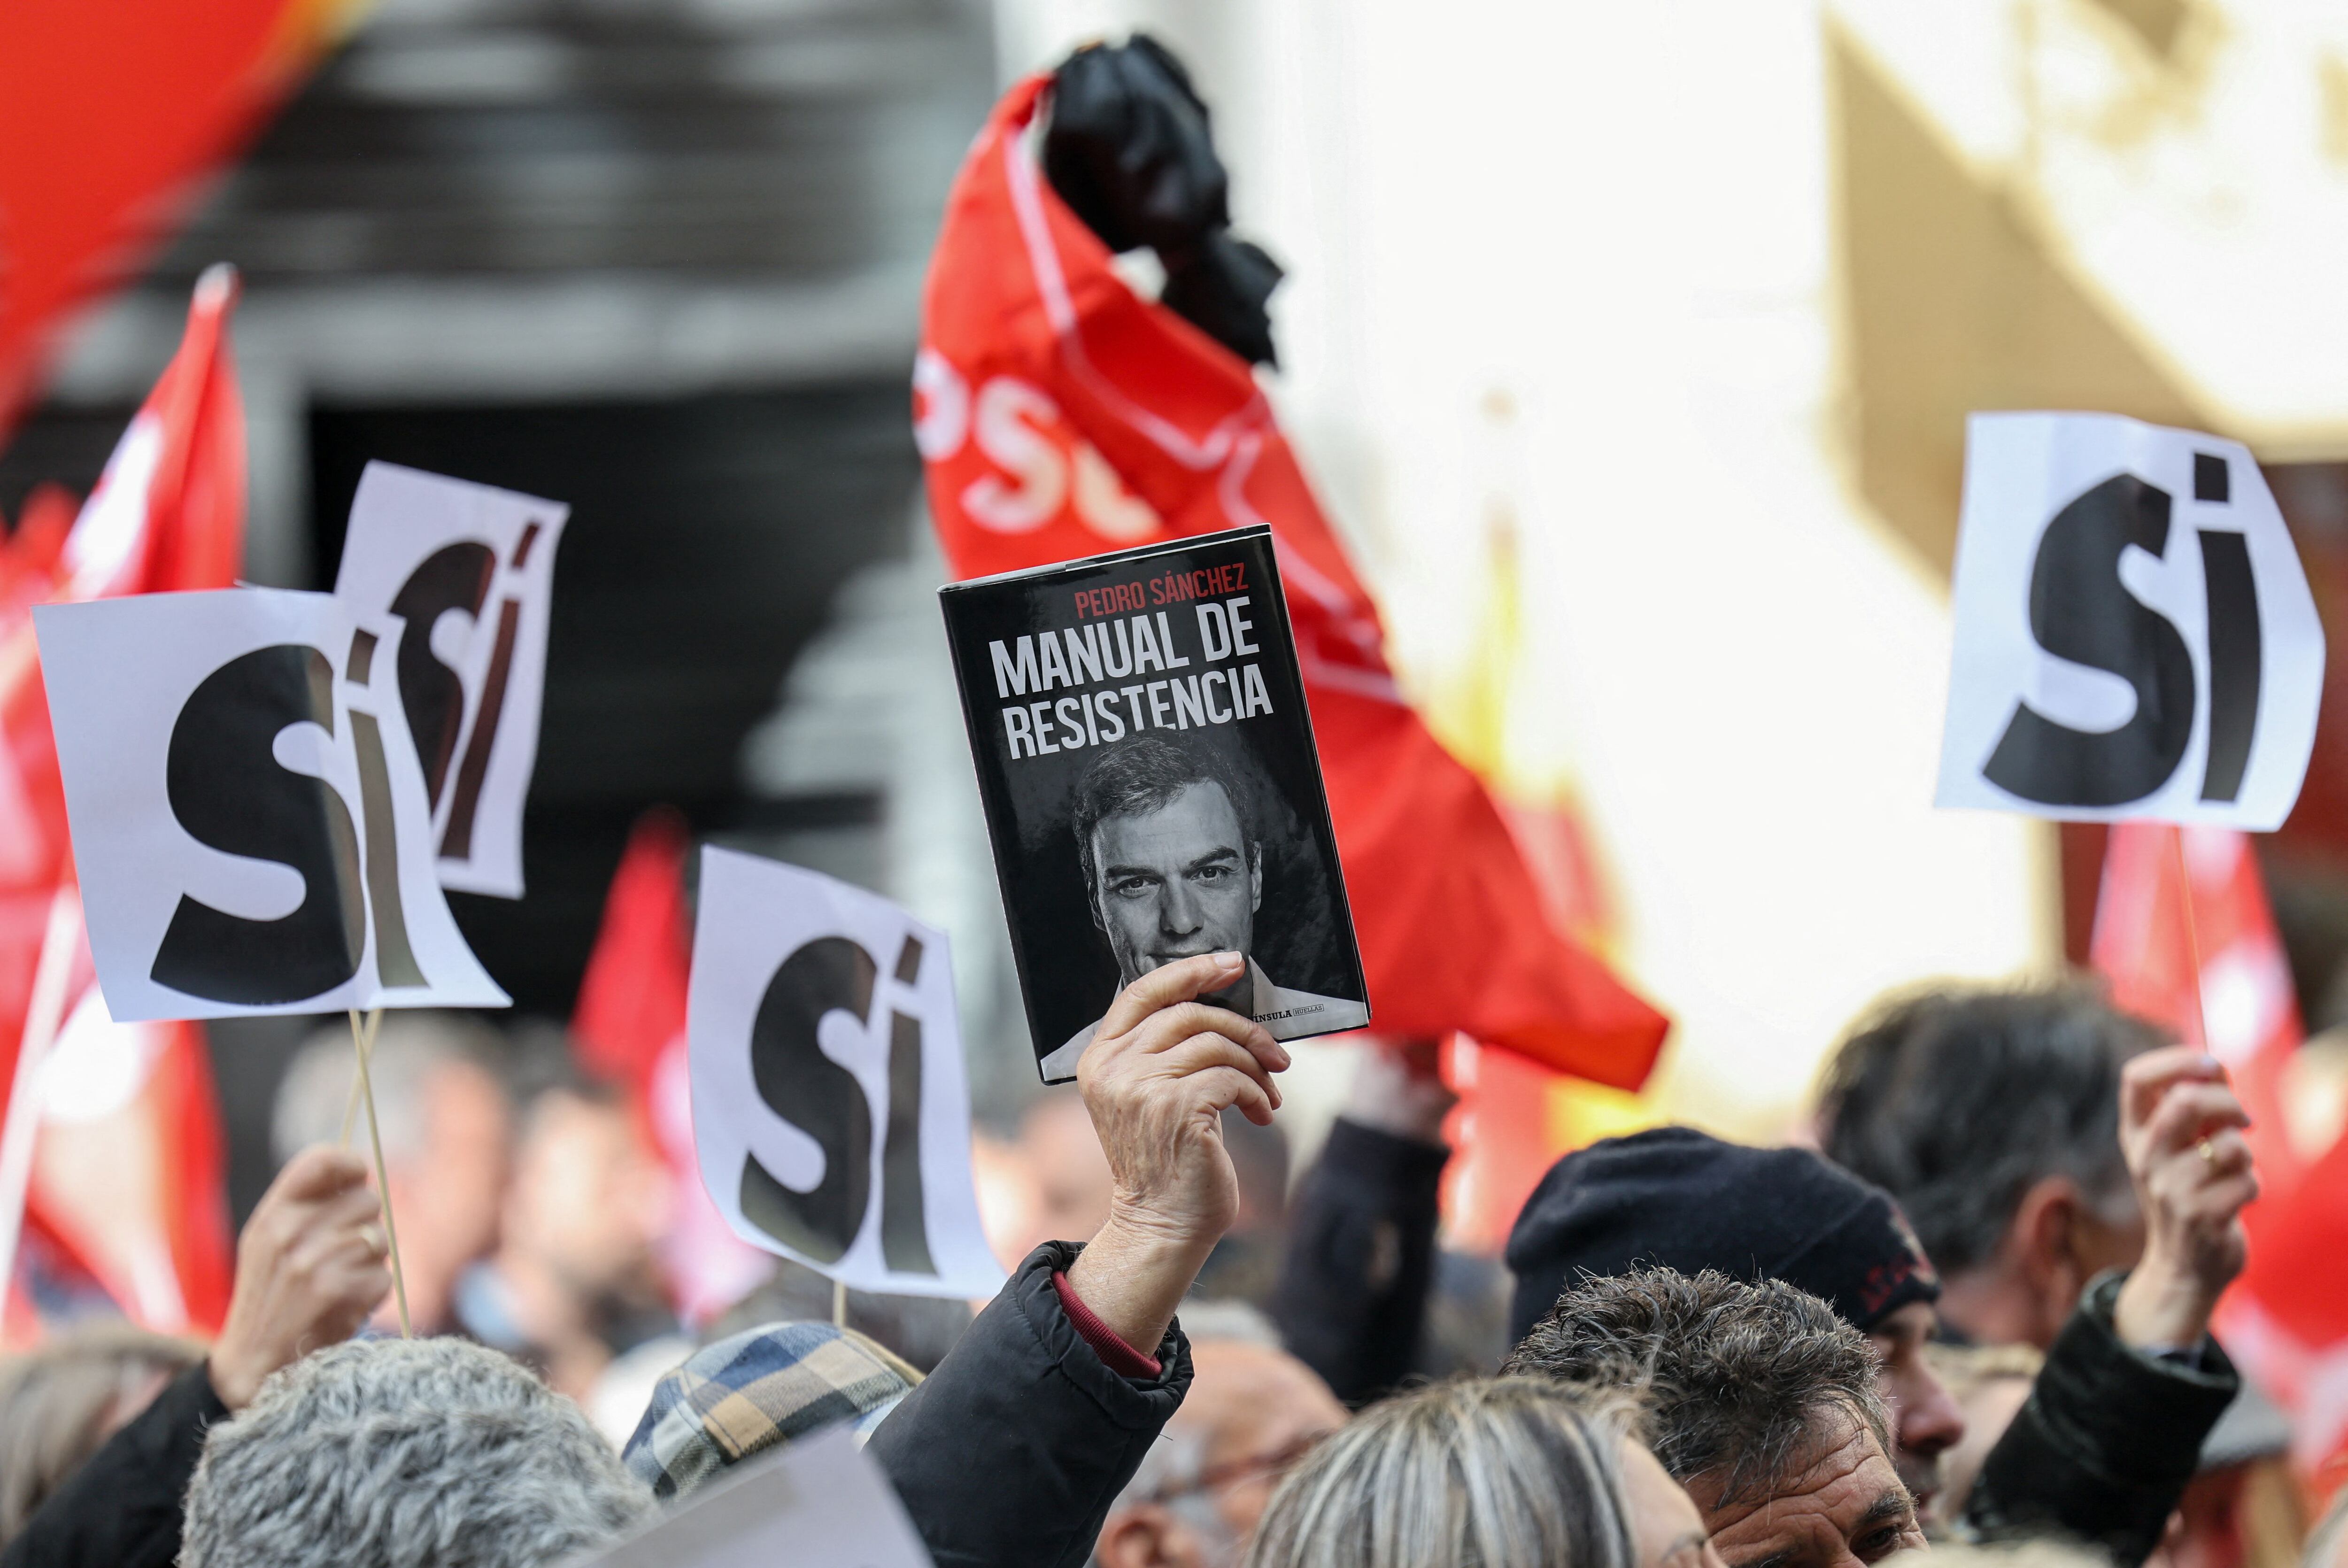 Una persona sostiene una copia del libro "Manual de resistencia" de  Pedro Sánchez, mientras la gente se reúne frente a la sede del PSOE para mostrar su apoyo al jefe de gobierno español, en Madrid, el 27 de abril de 2024. Foto: Reuters